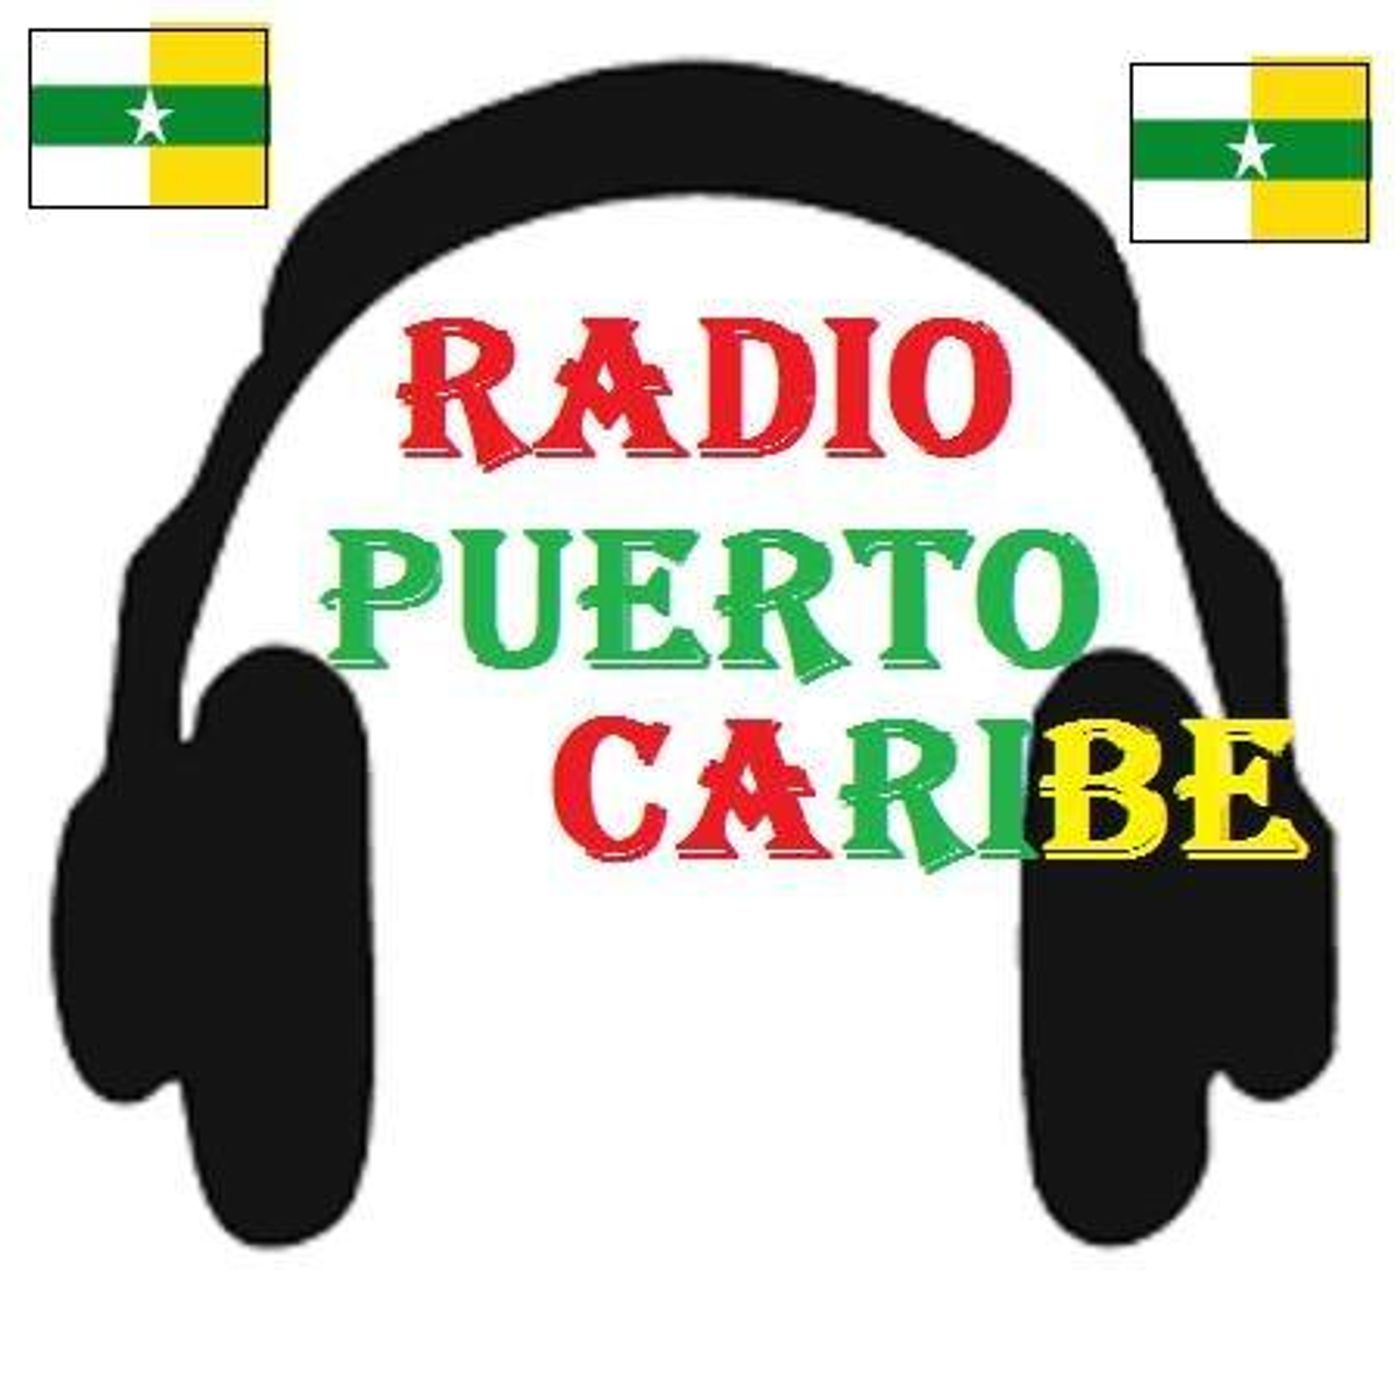 Radio Puerto Caribe Stereo's show